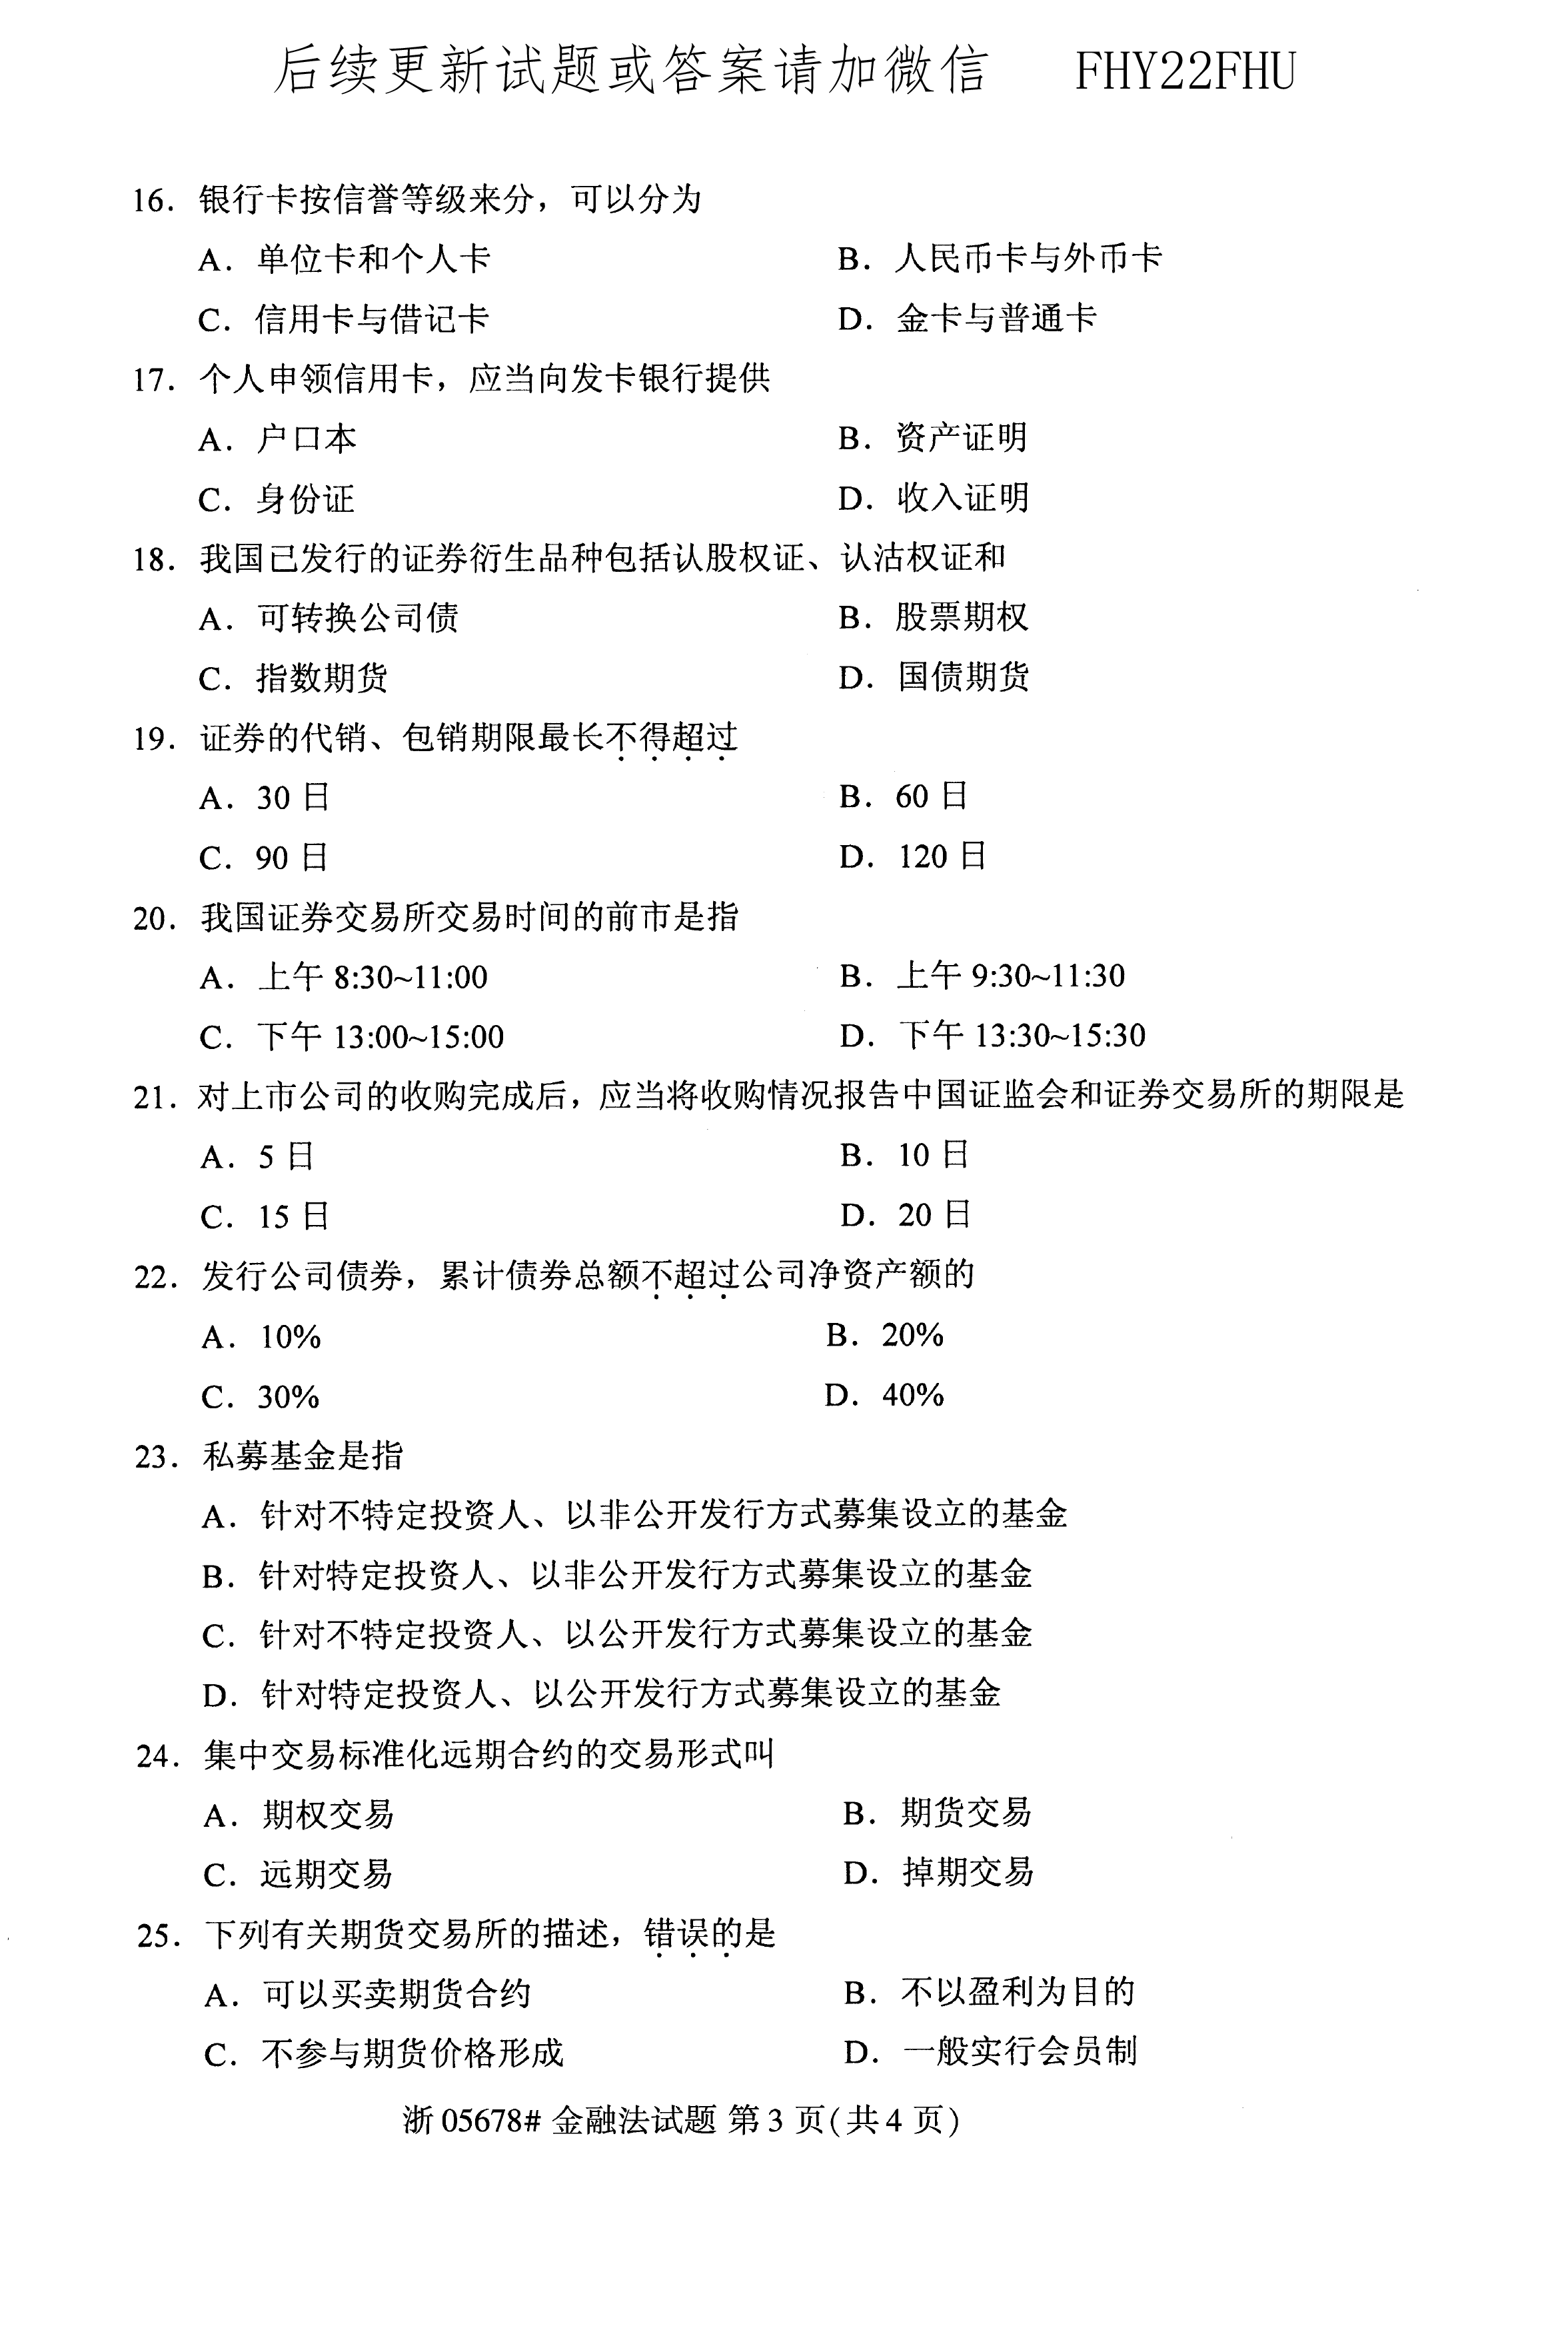 2020年10月贵州省自学考试《金融法》05678试题和答案